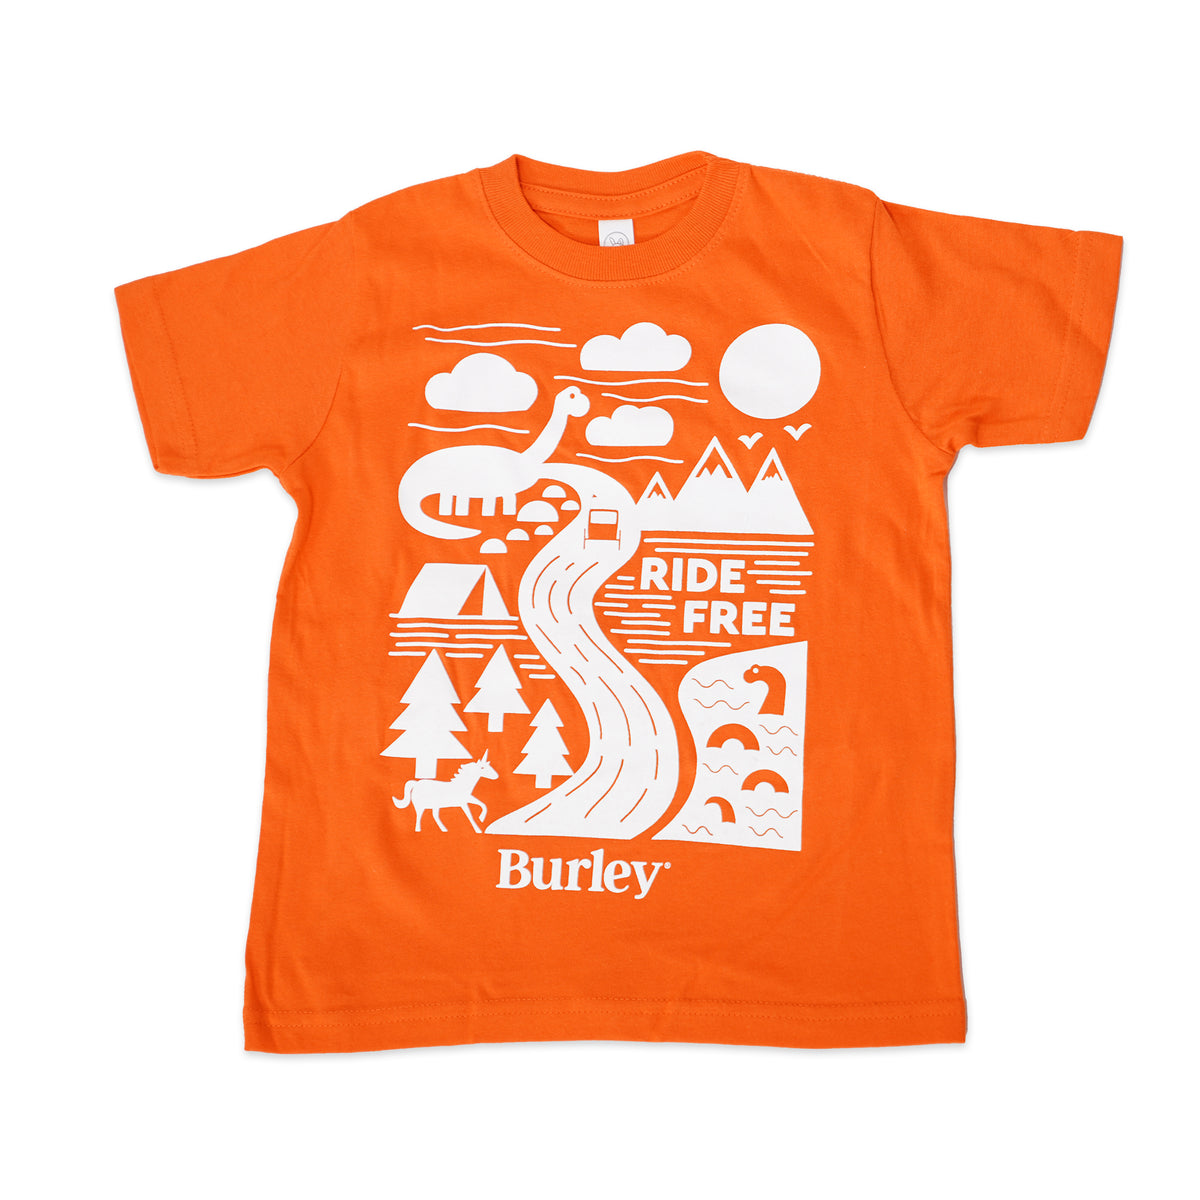 Burley Ride Free Toddler Shirt, Orange